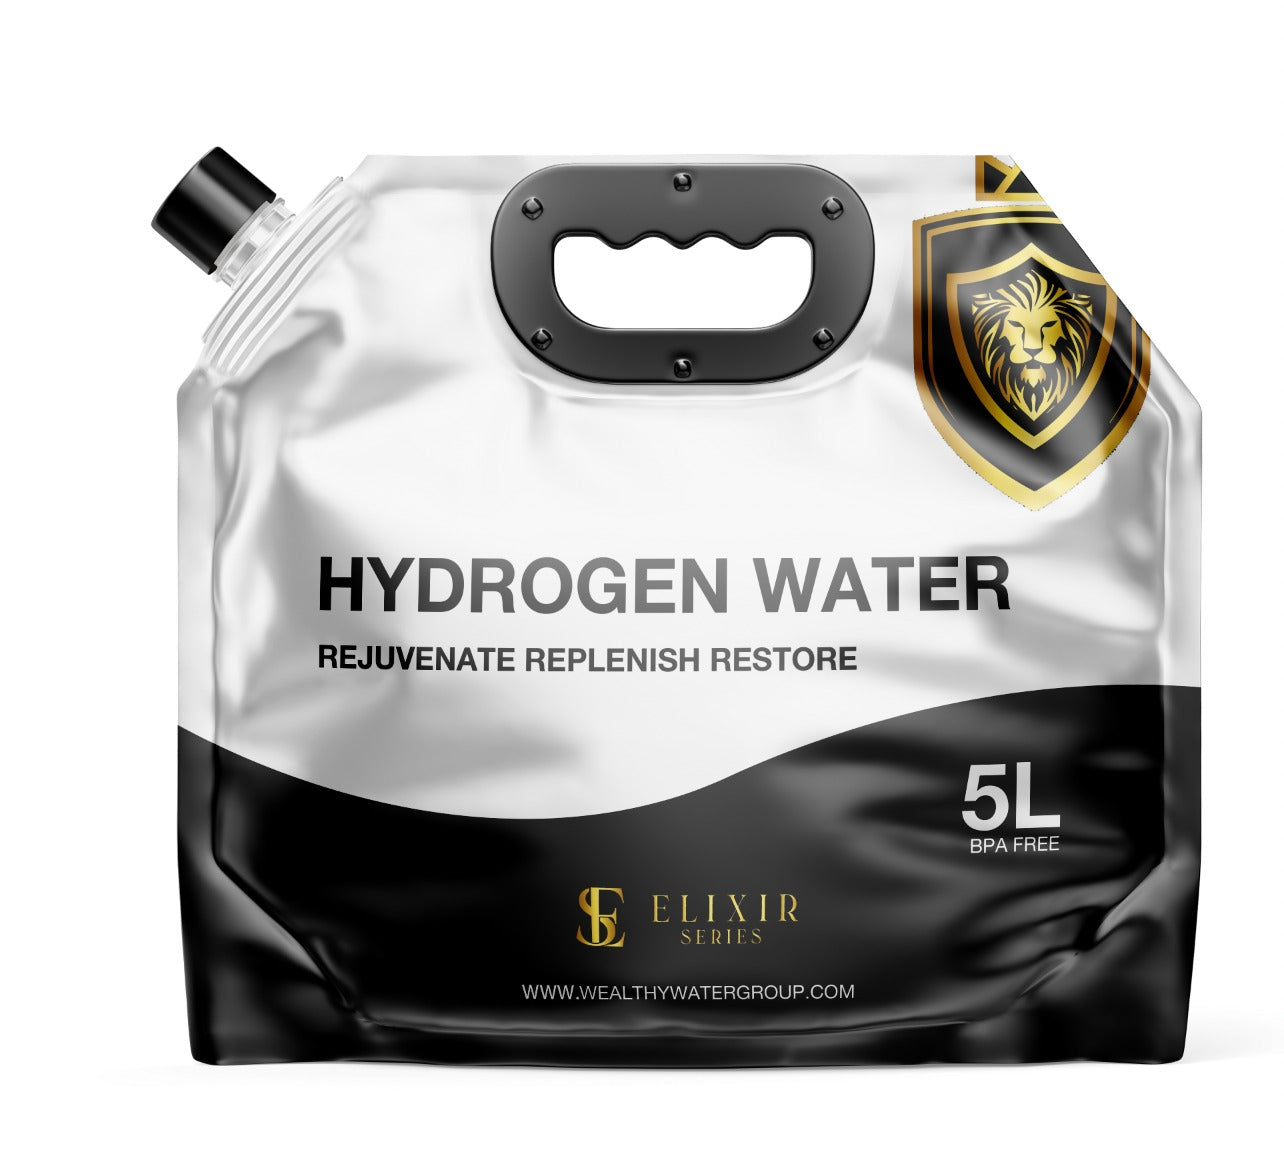 VOLCANO hydrogen water bottle | 10% OFF | eBay